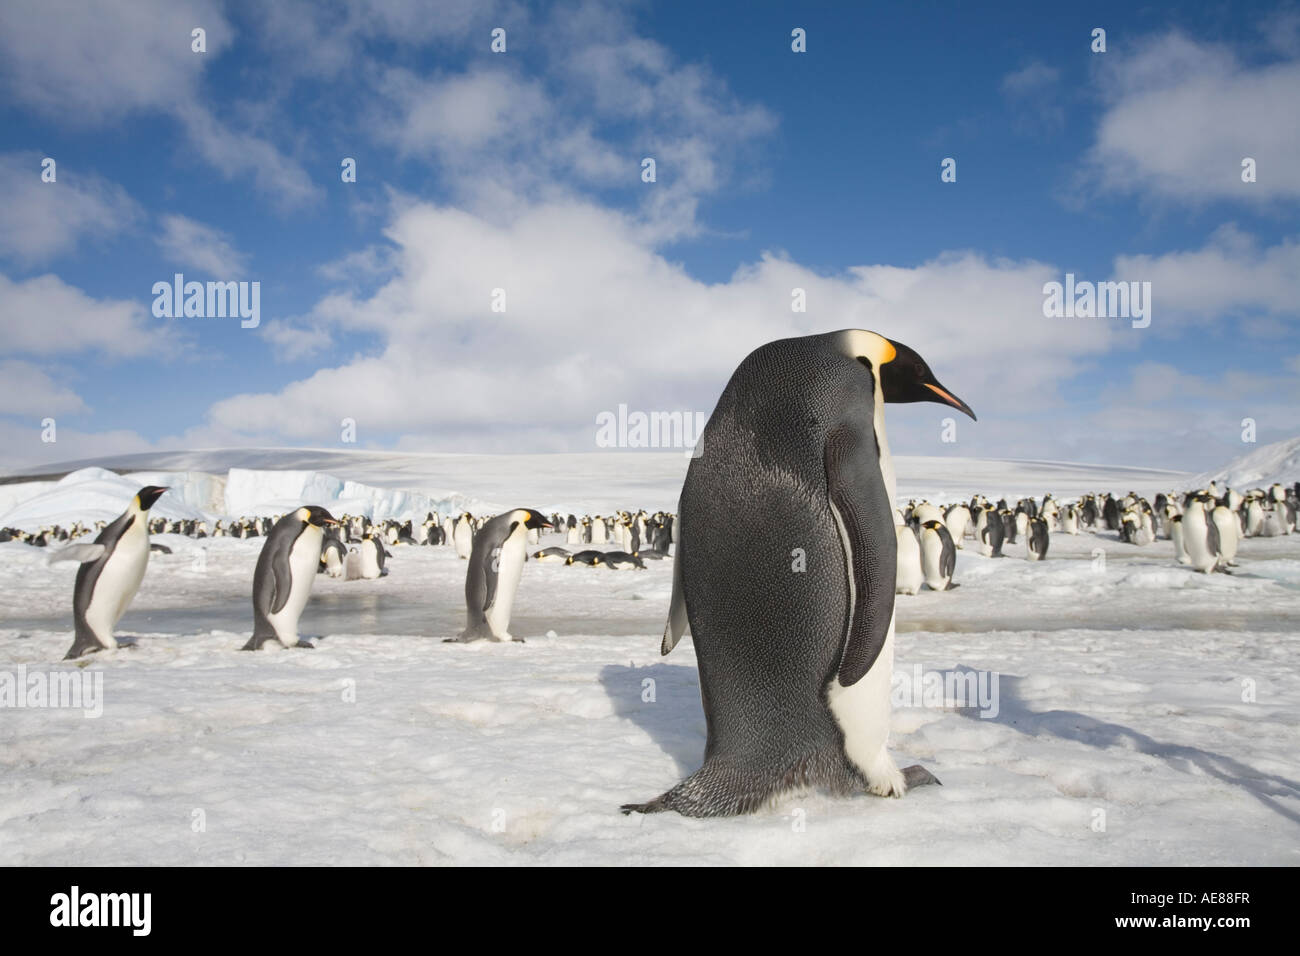 L'Antartide Snow Hill Island Pinguini imperatore Aptenodytes forsteri sul mare congelati su ghiaccio pomeriggio soleggiato Foto Stock